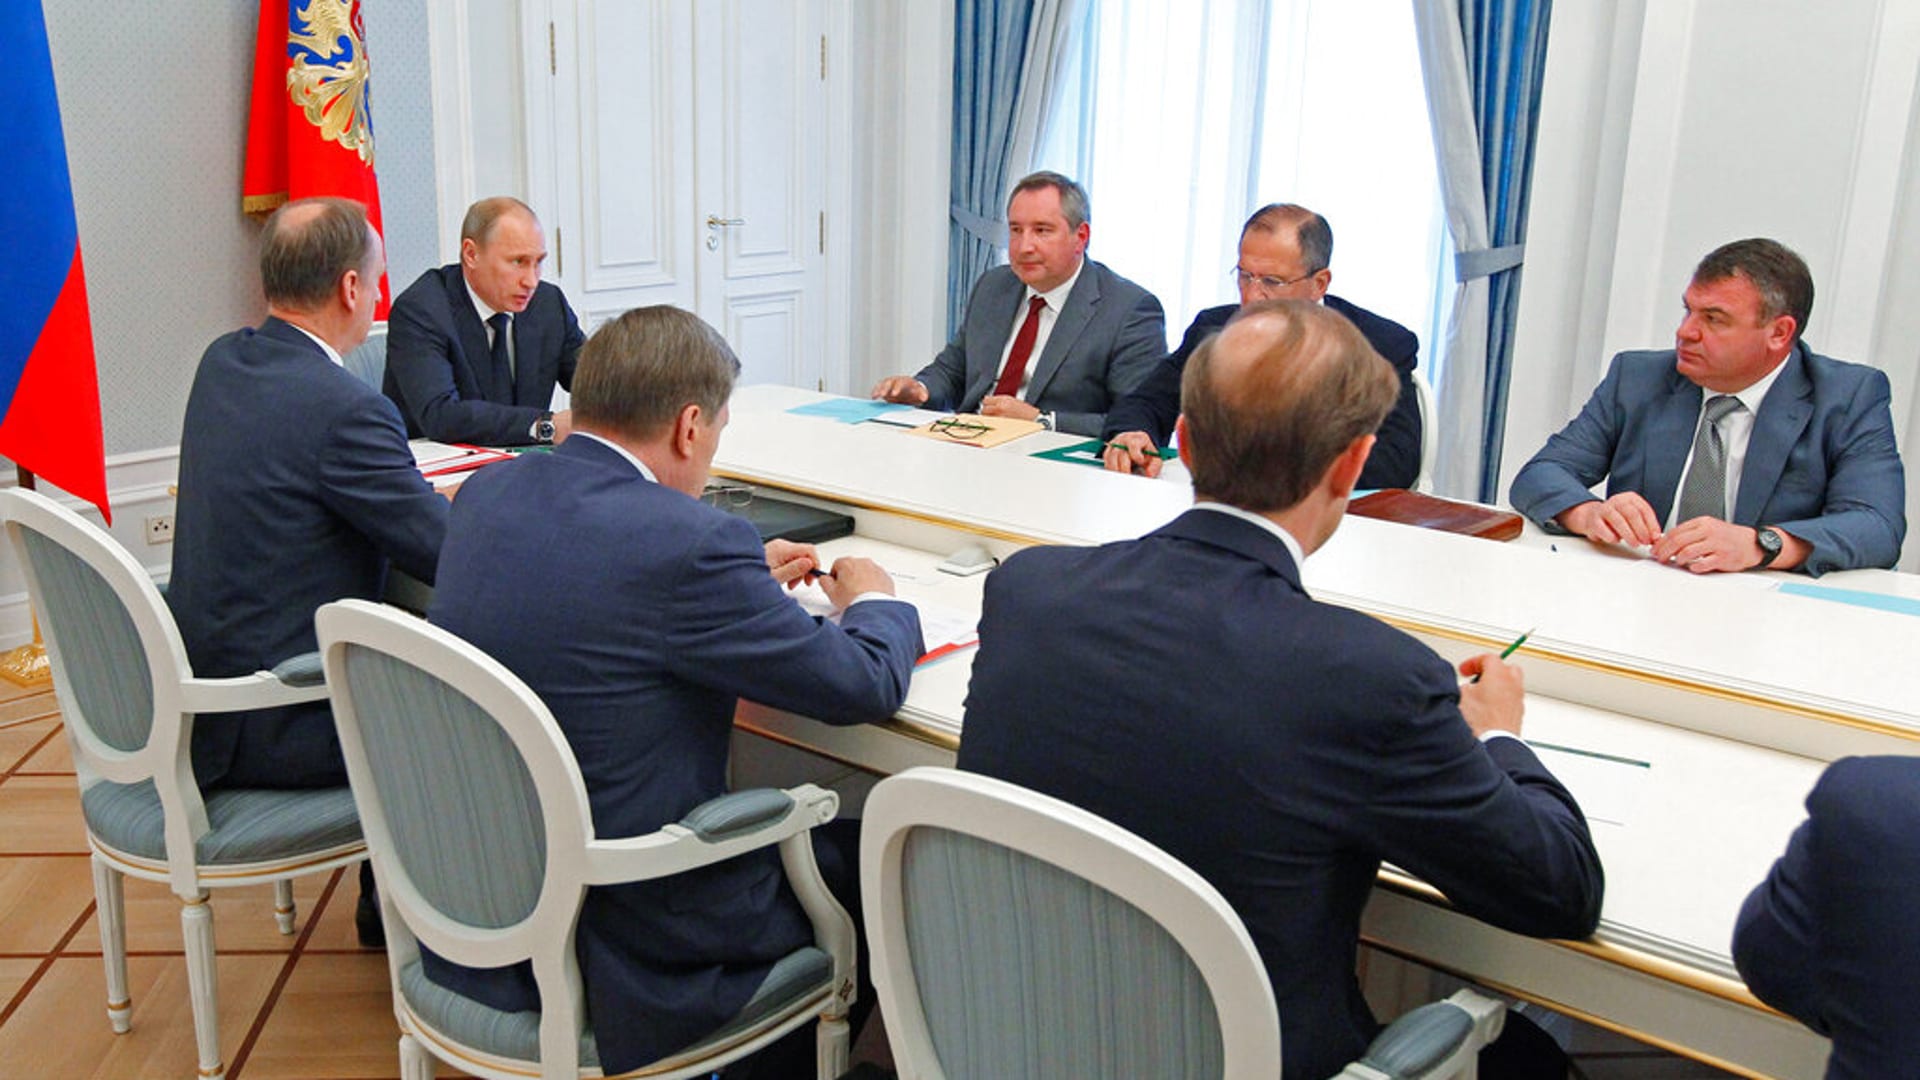 Osobní schůzky v bezprostřední blízkosti prezident Putin zrušil